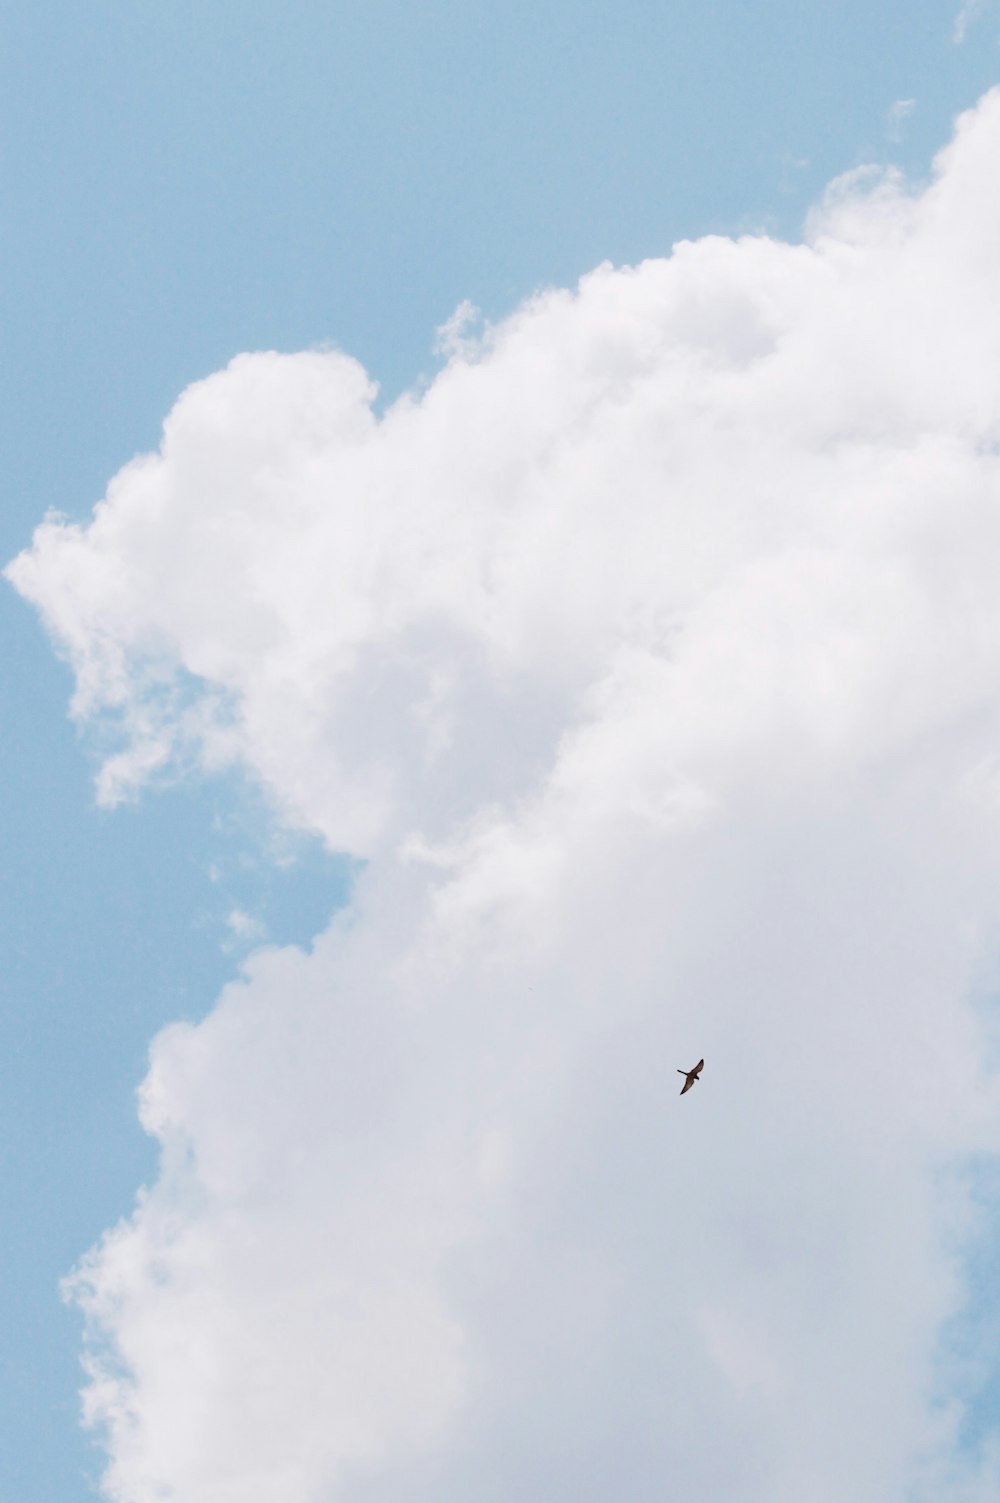 Schwarzer Vogel fliegt tagsüber unter blauem Himmel